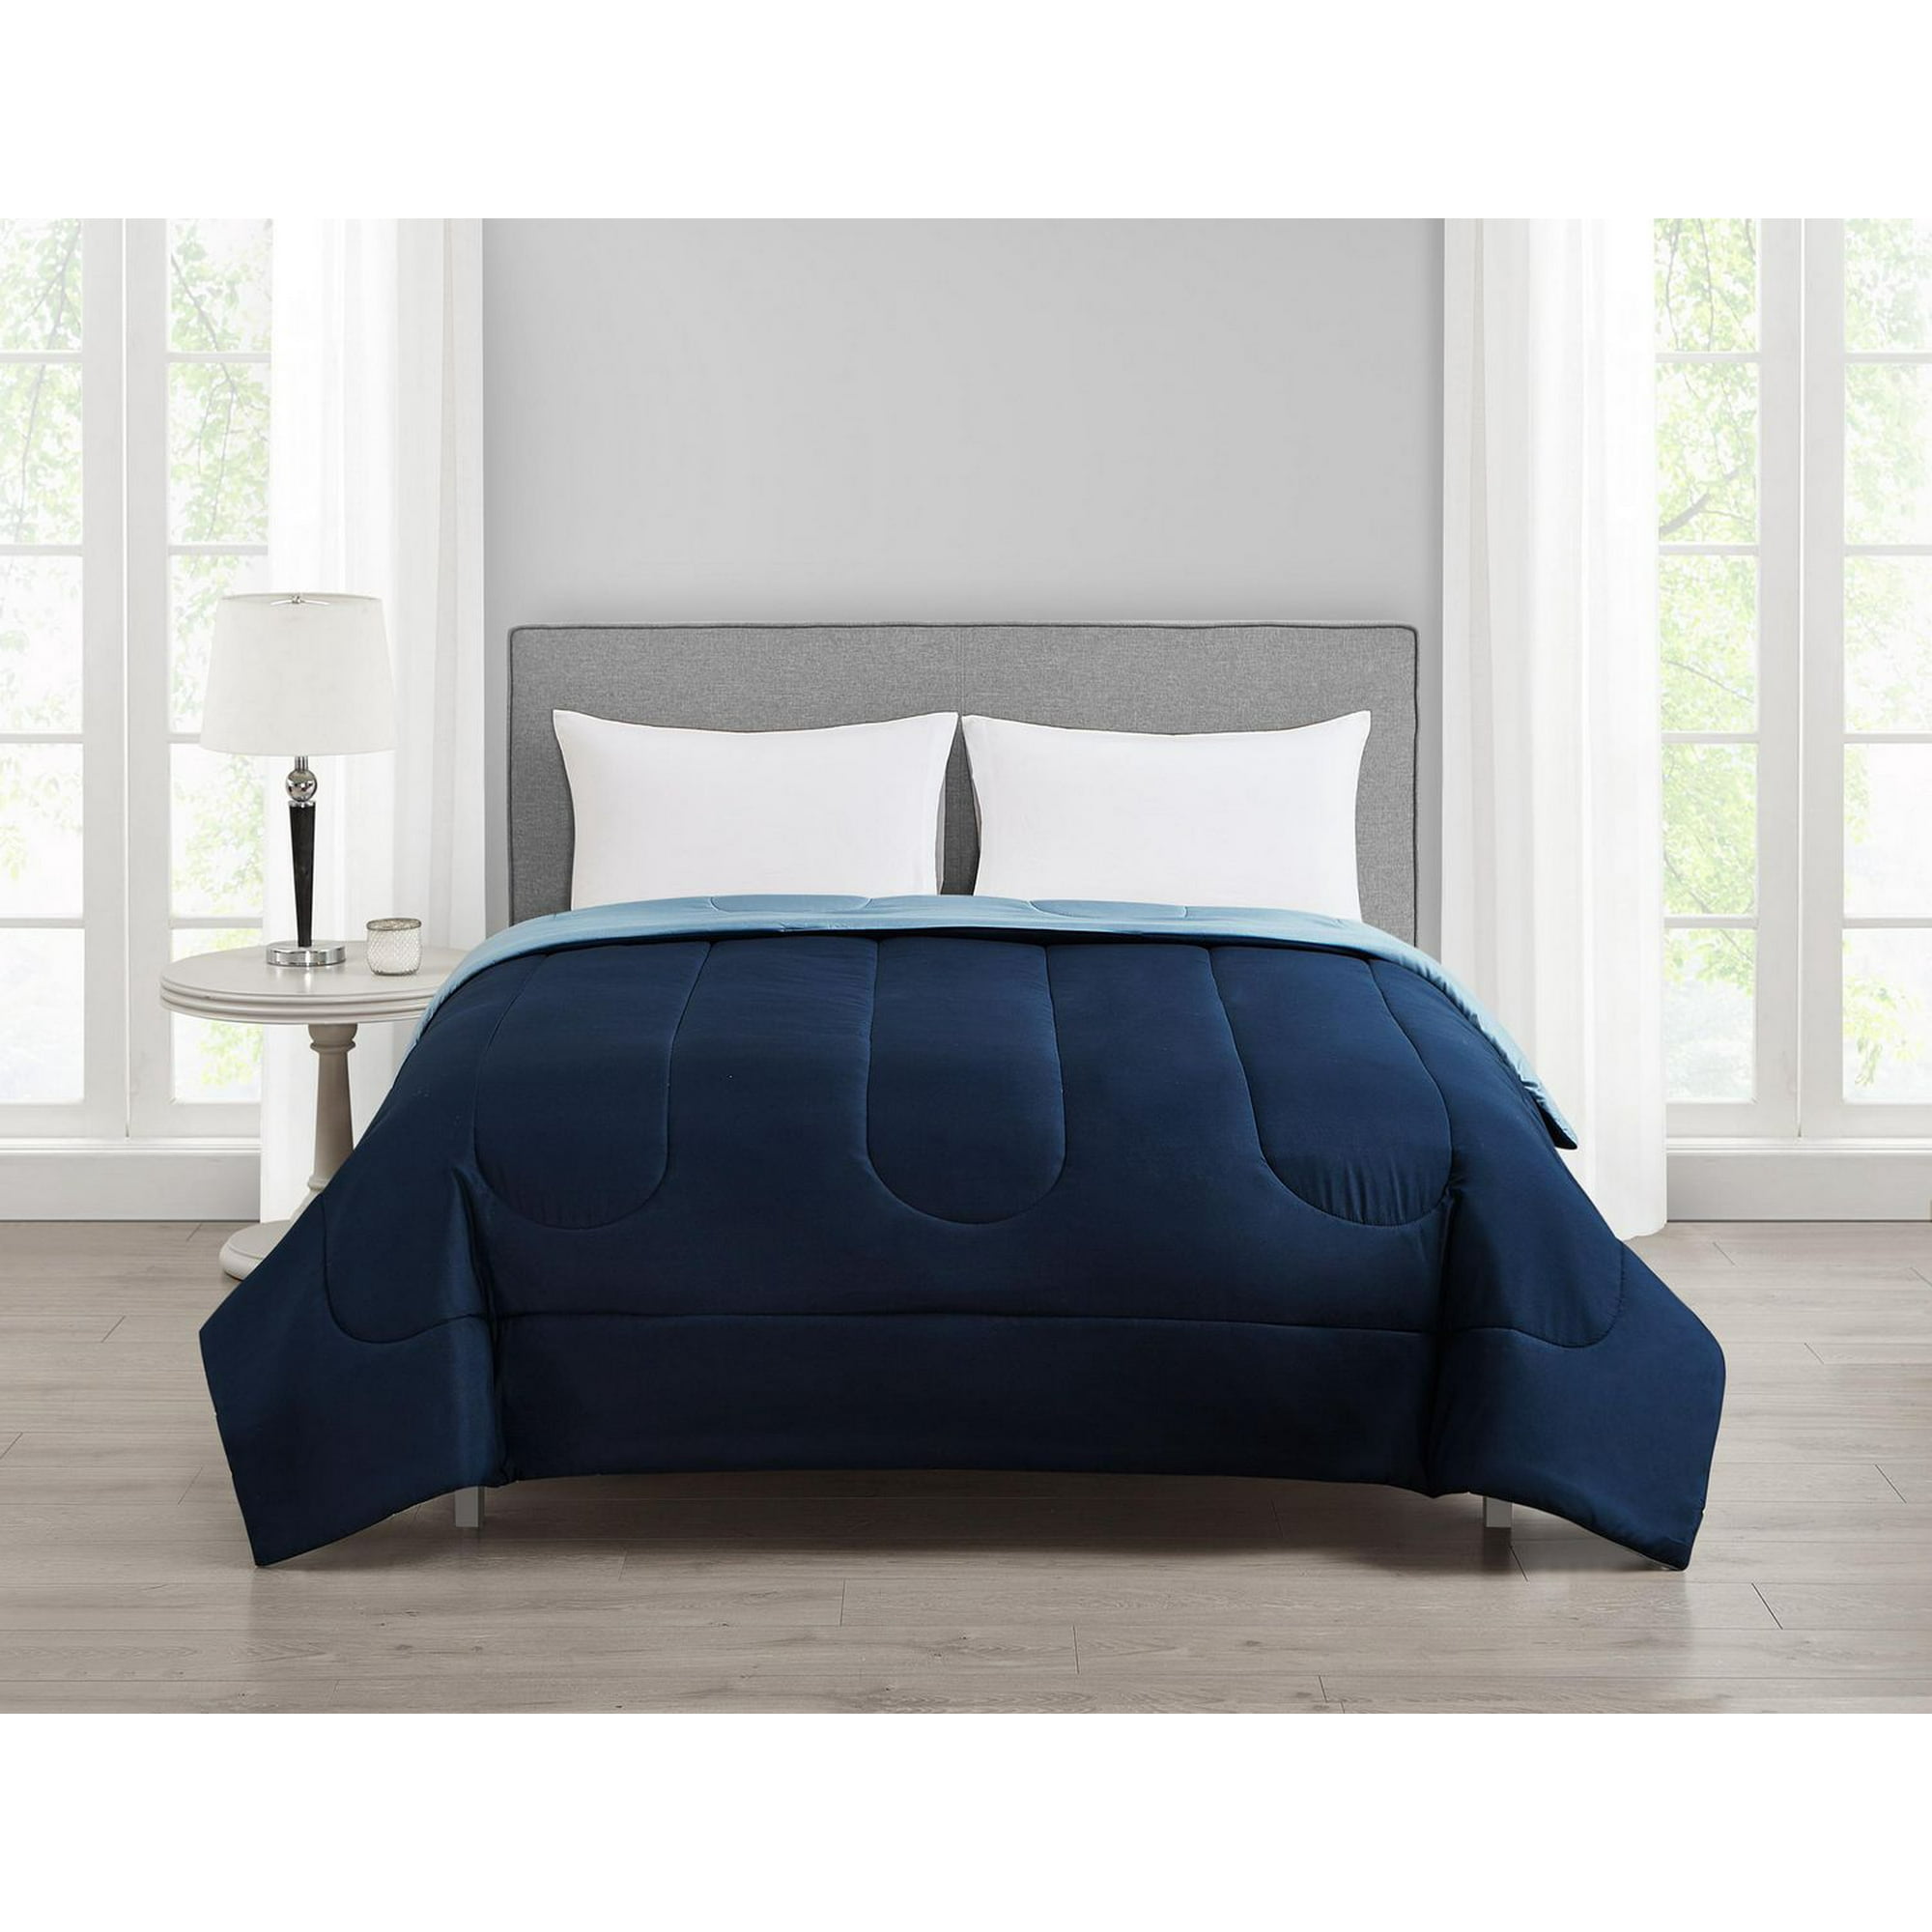 Mainstays Navy Reversible Comforter Double/Queen, comforter 